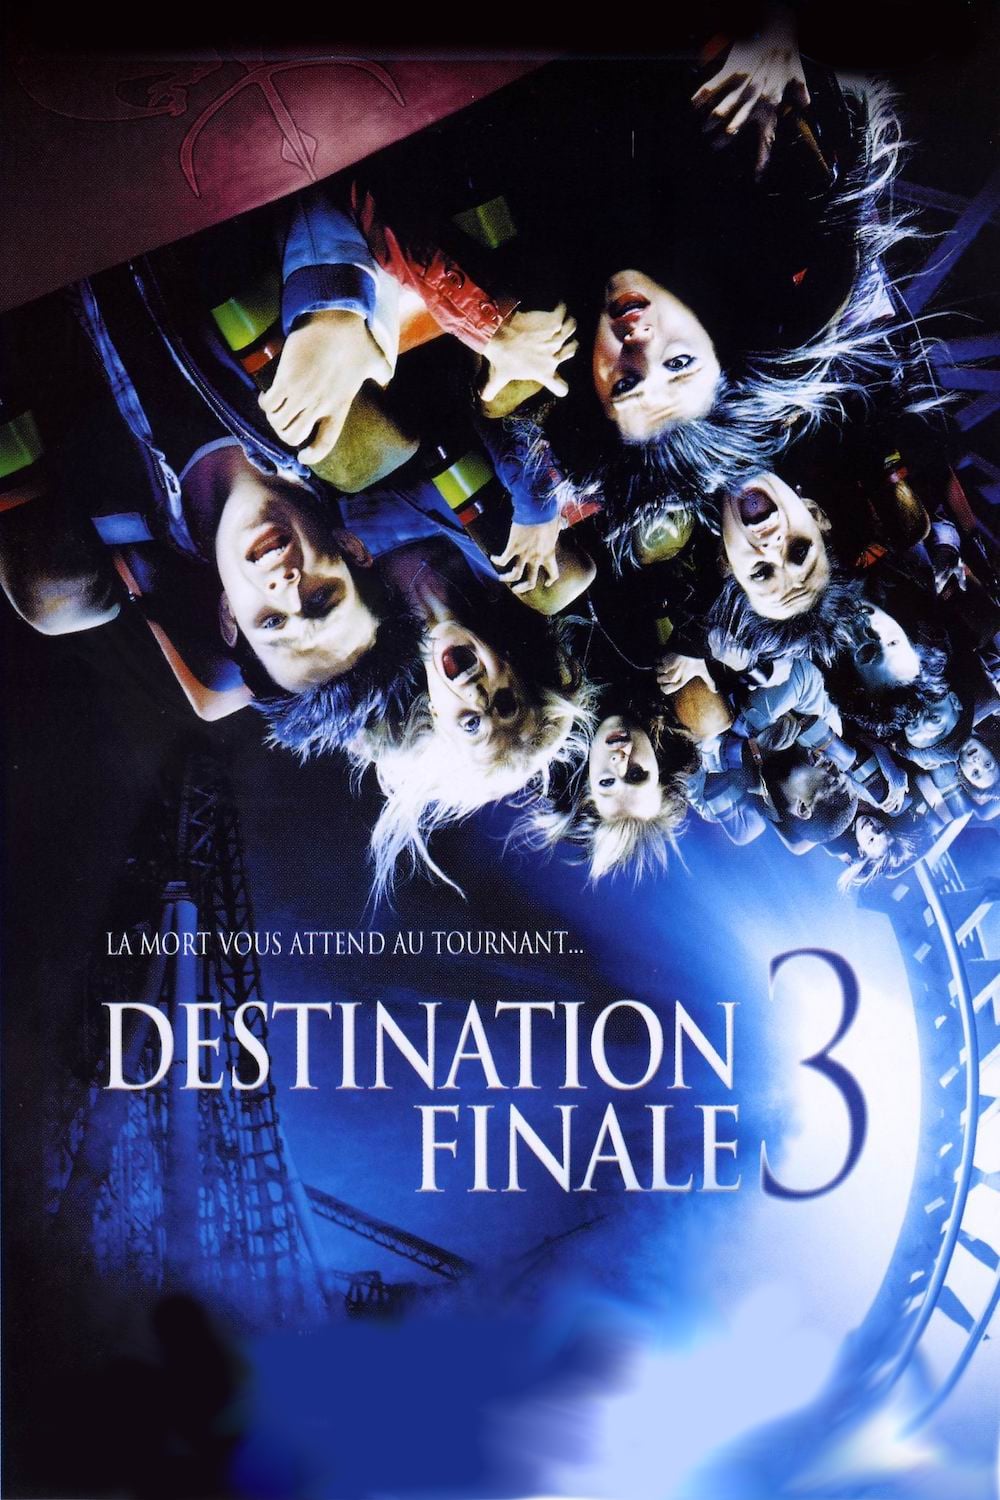 Destination Finale 3 est-il disponible sur Netflix ou autre ?